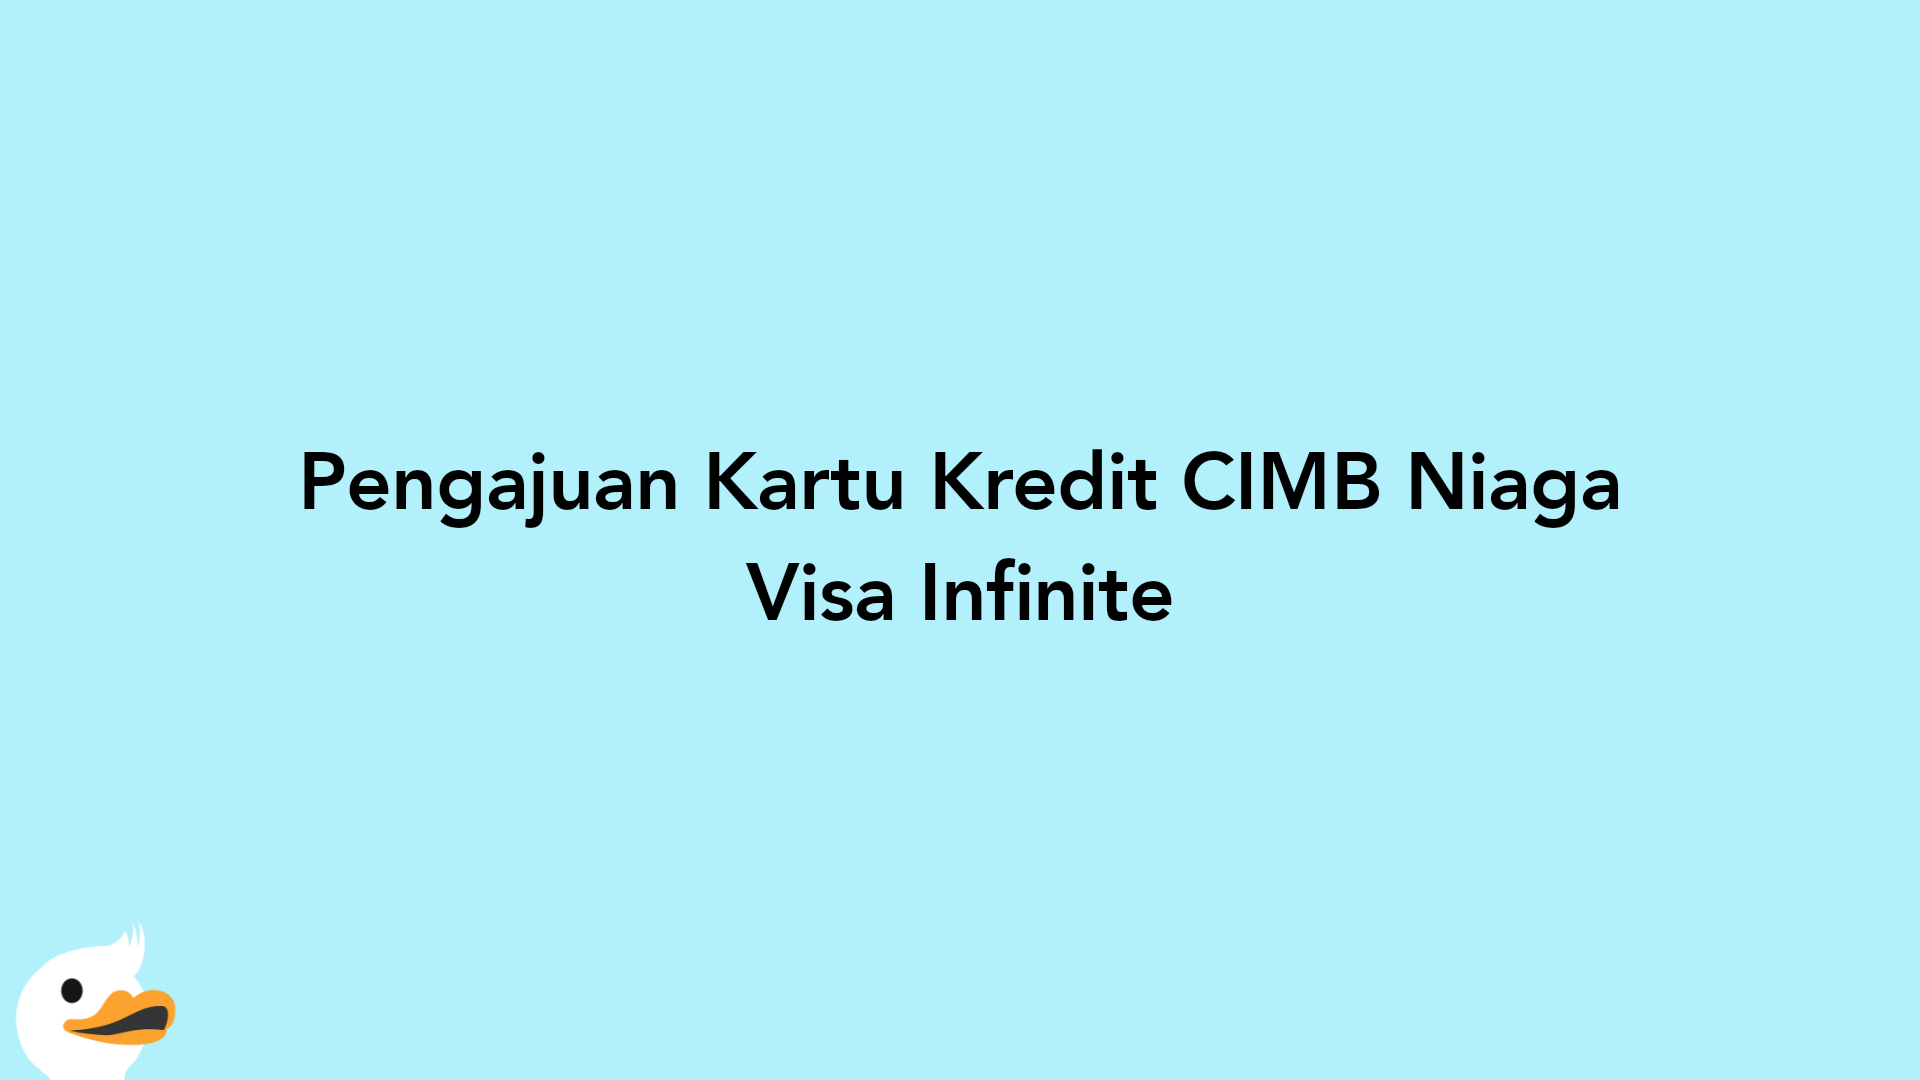 Pengajuan Kartu Kredit CIMB Niaga Visa Infinite